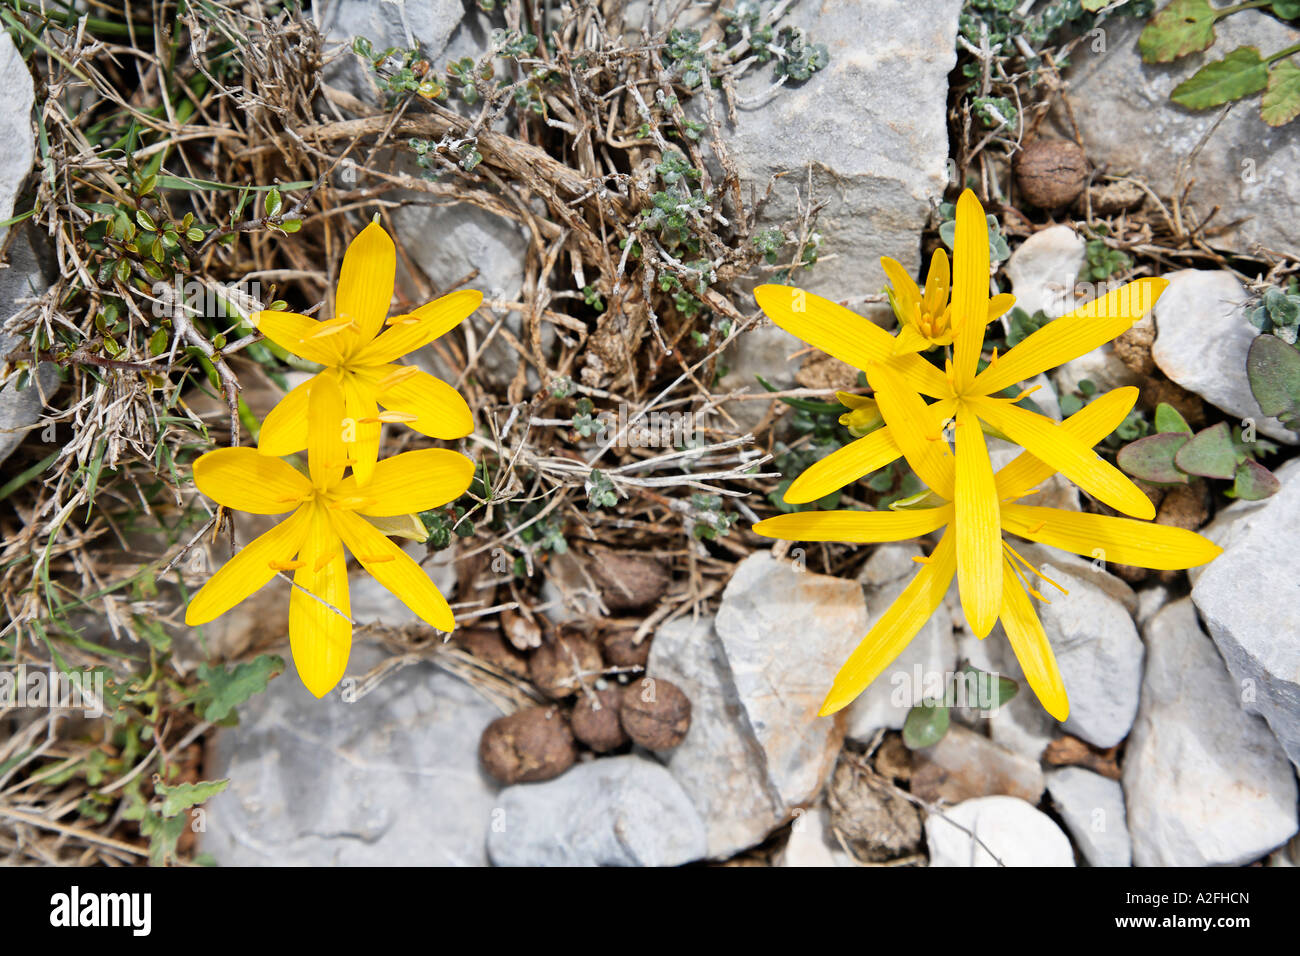 Sternbergia colchiciflora, Crete, Greece Stock Photo